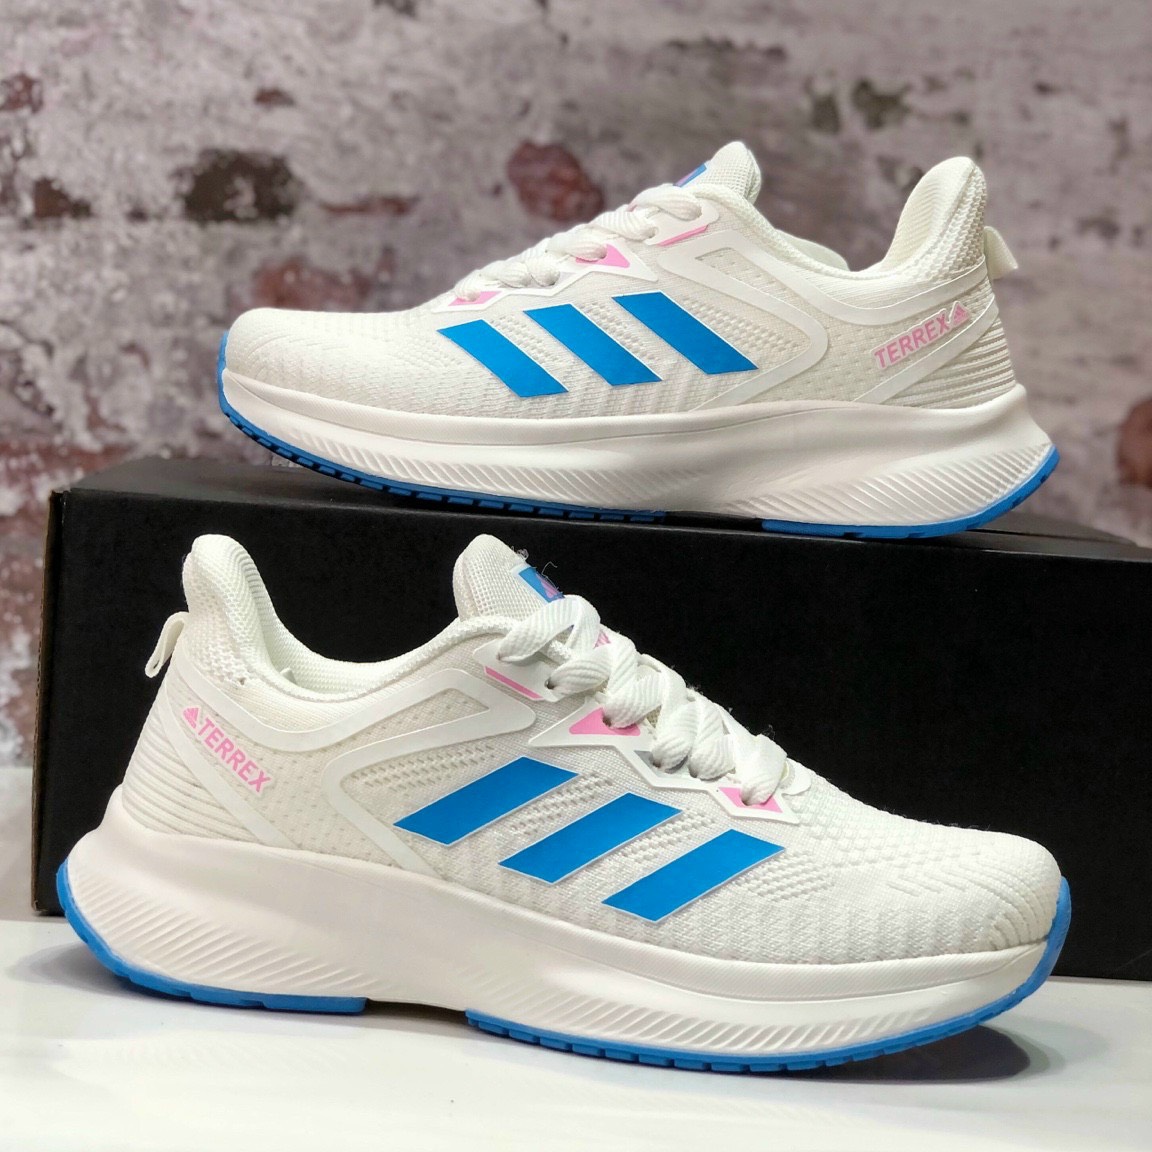 Giày thời trang nam Adidas Superstar - White/Blue | Chuyên nhận đặt hàng  xách tay từ các nước về Việt Nam với giá rẻ - uy tín - nhanh chóng.